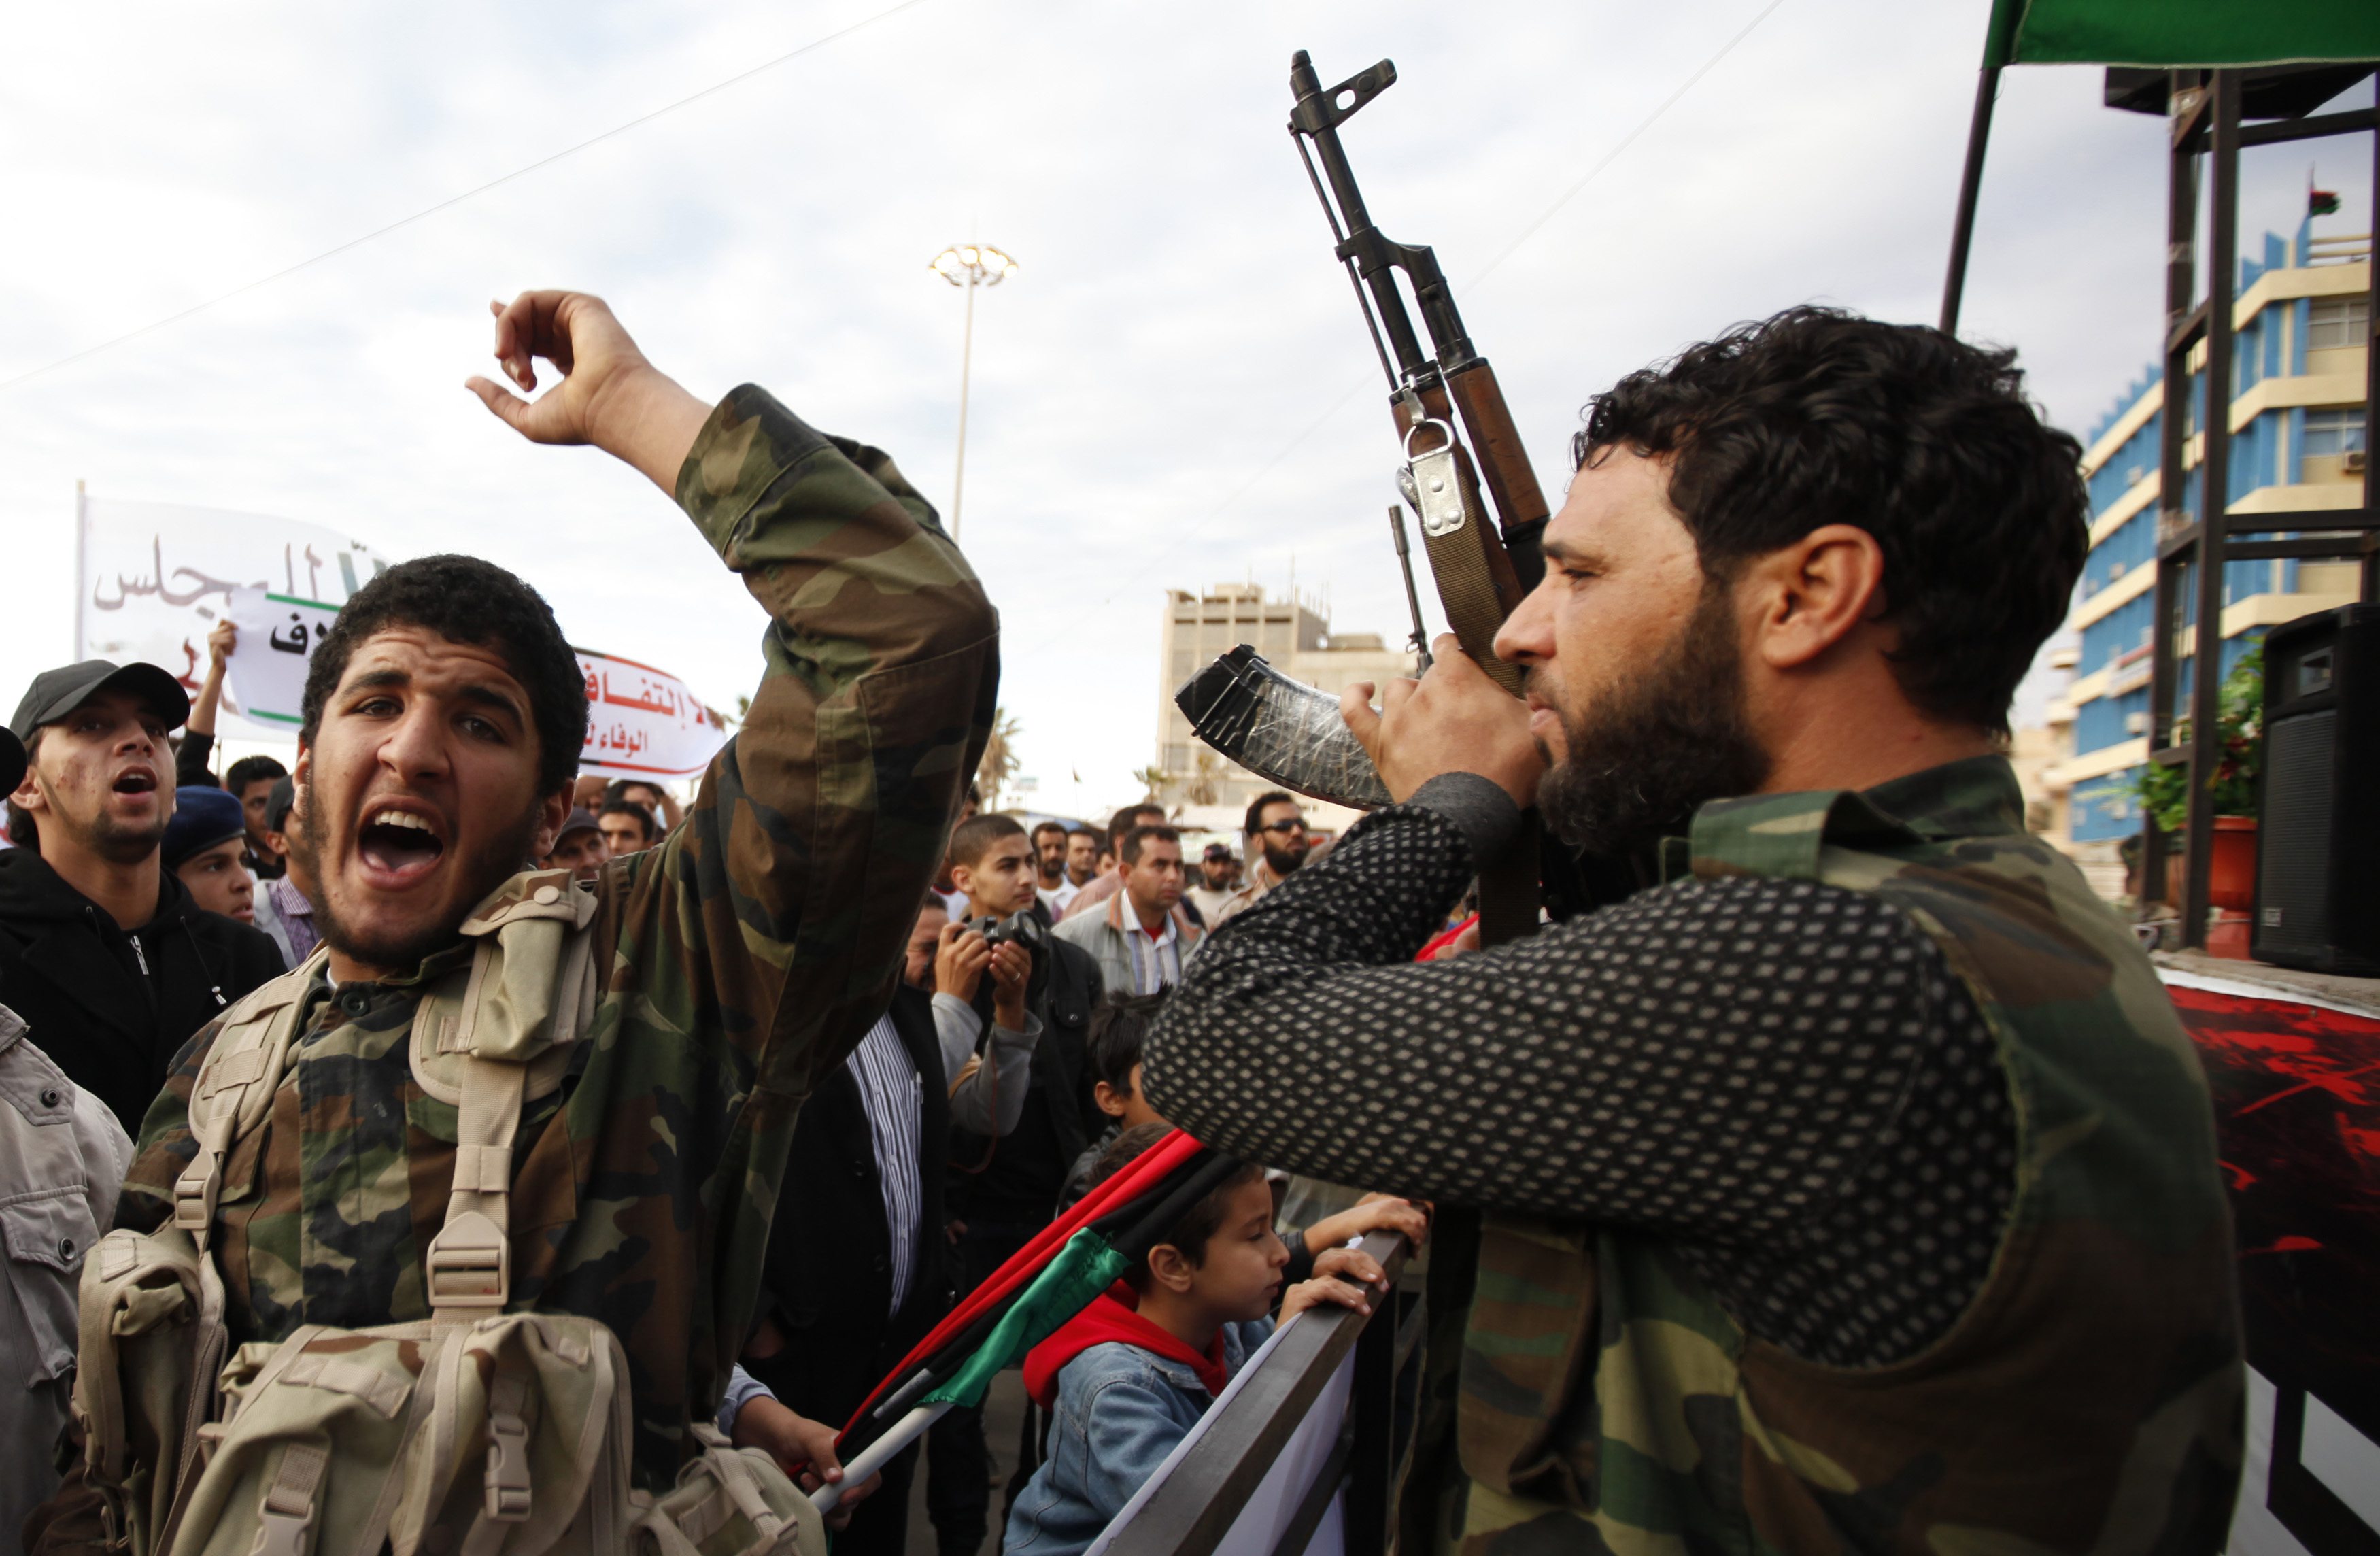 Σφοδρές μάχες αντικαθεστωτικών με κυβερνητικές δυνάμεις στη Λιβύη